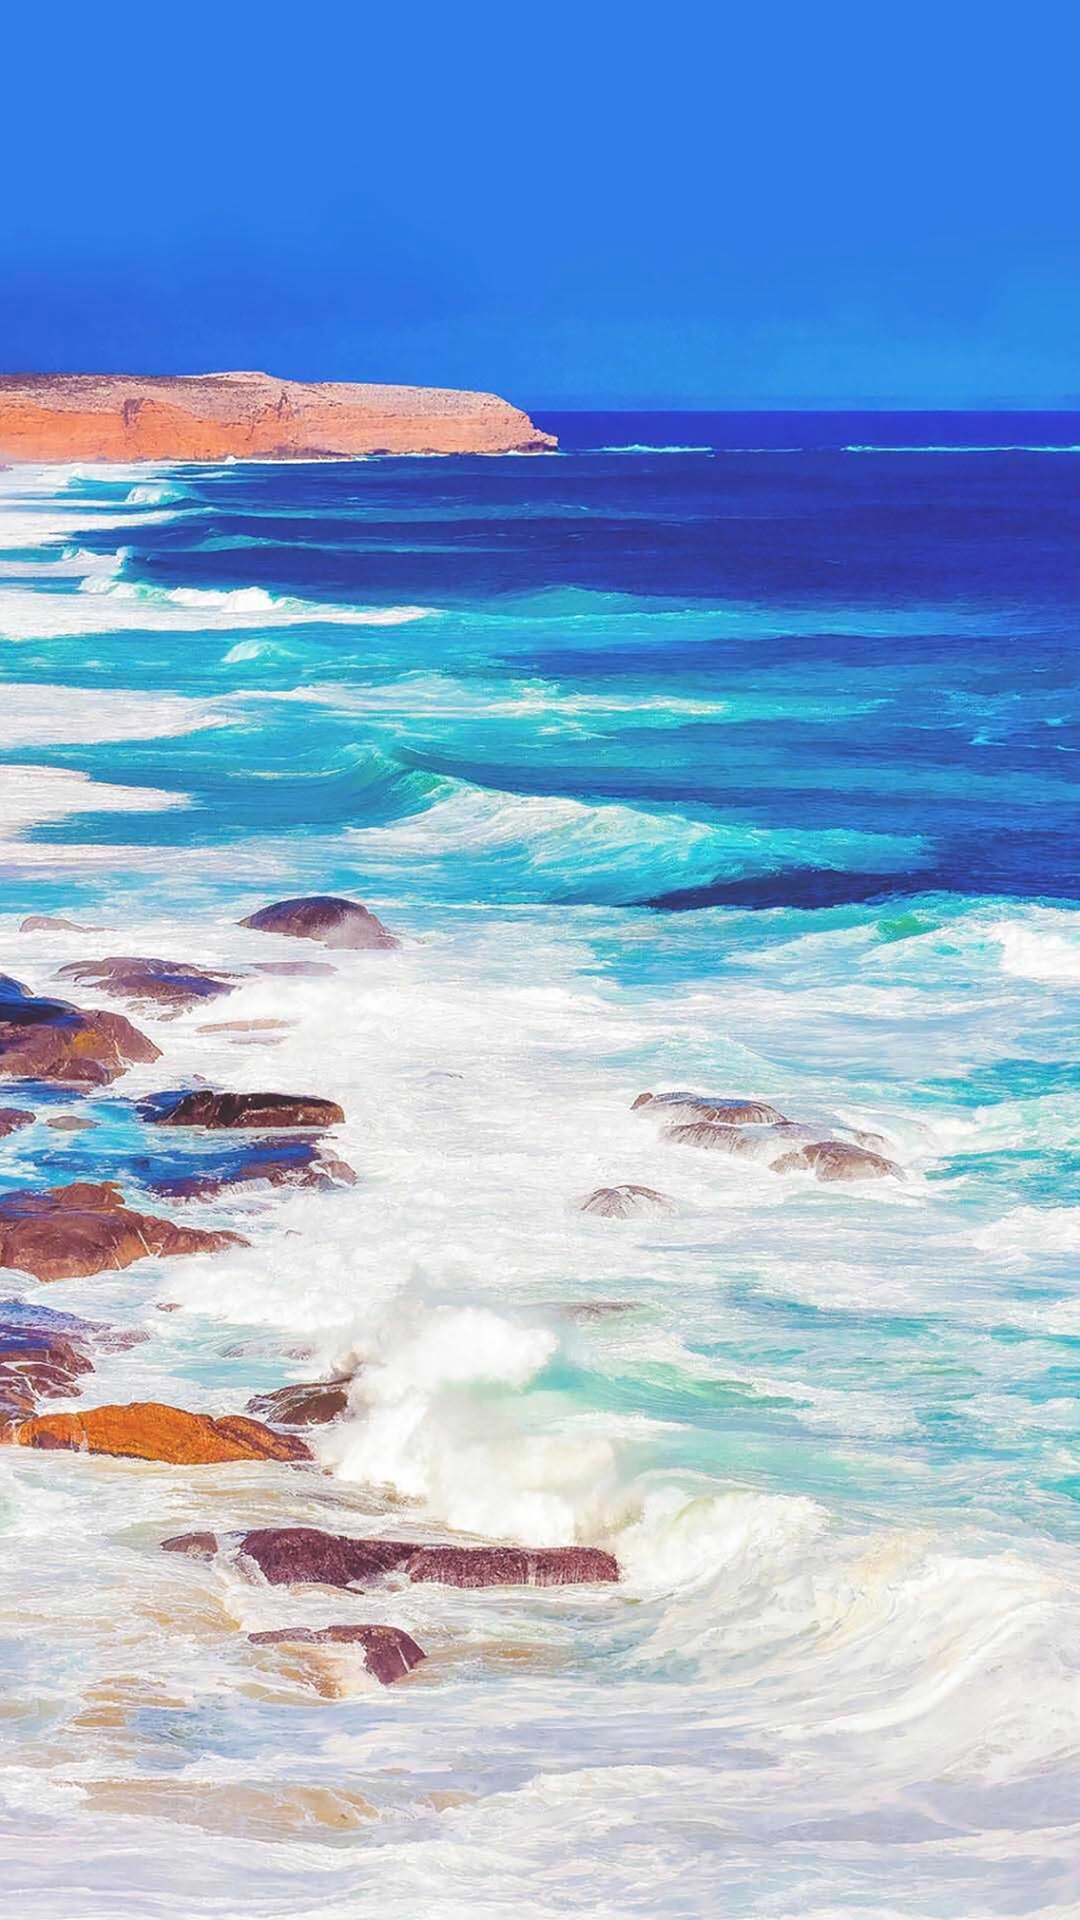 蓝色大海唯美风景手机壁纸图片